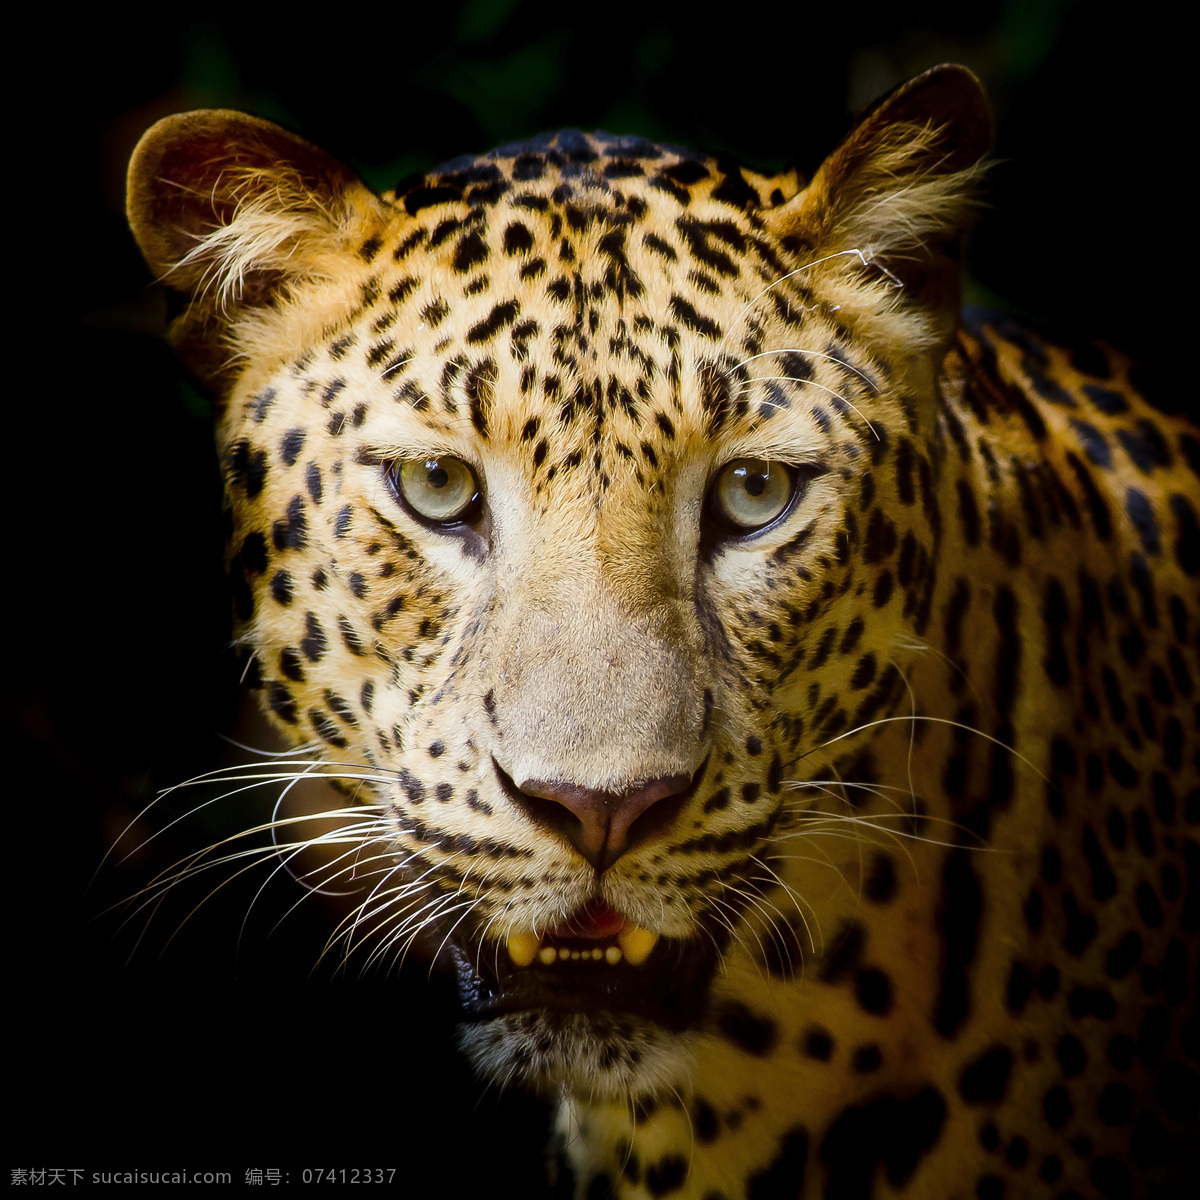 目光如炬 美洲豹 豹 动物 野生动物 凶猛 陆地动物 生物世界